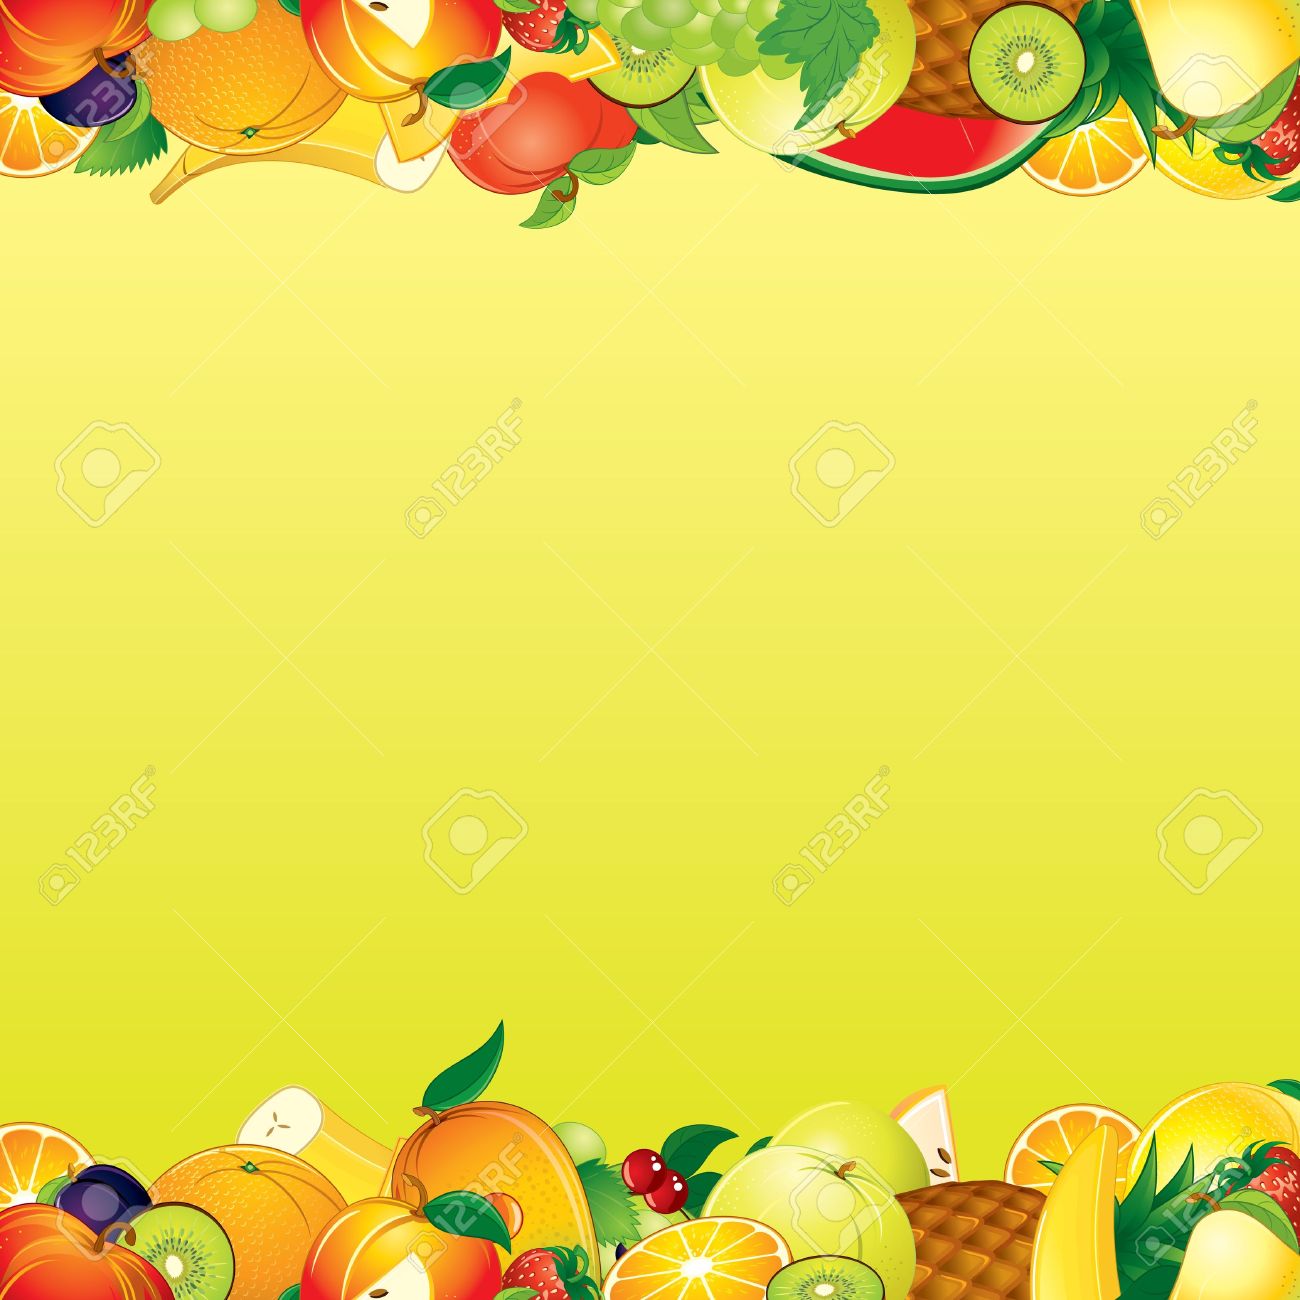 Free fruit background.